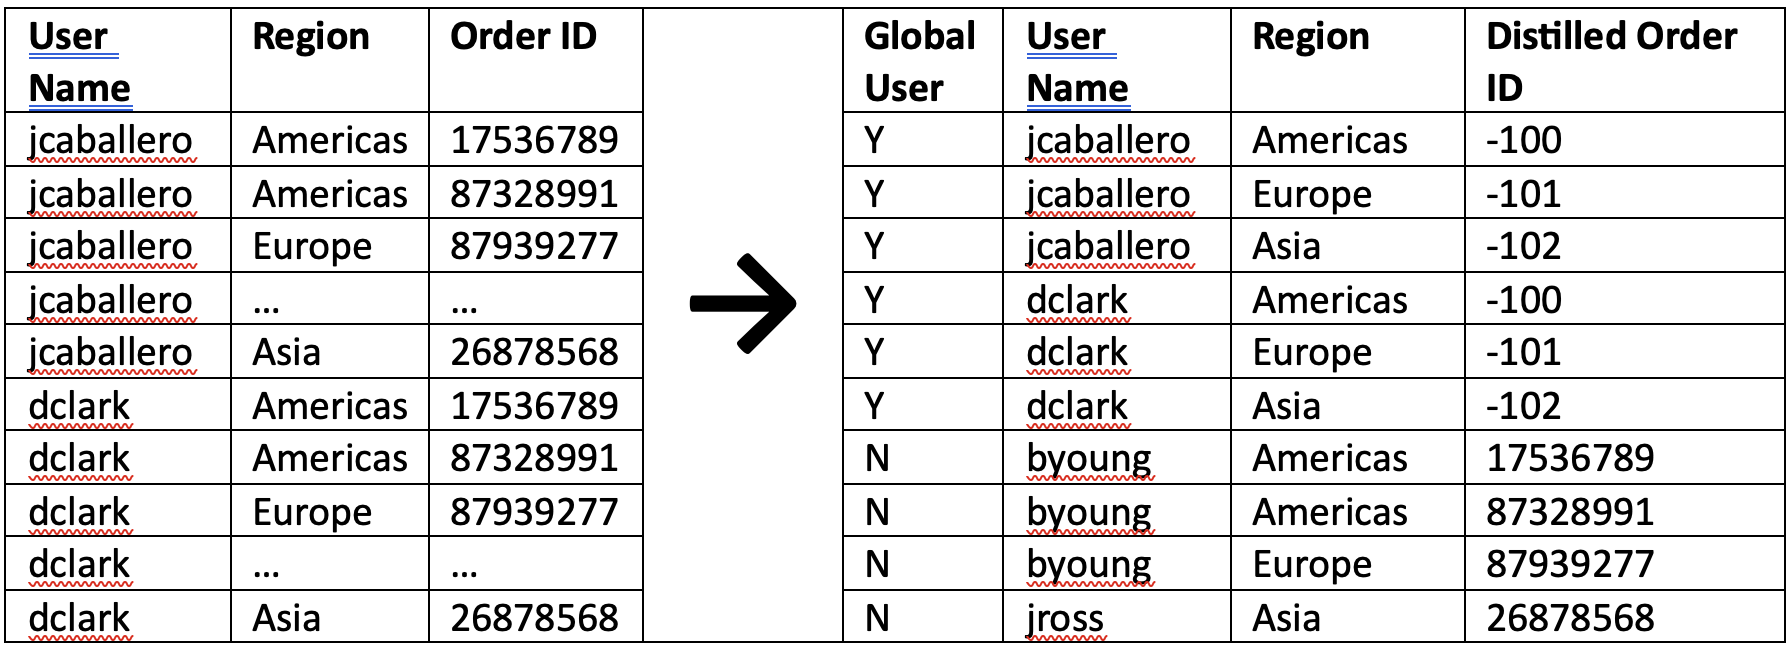 Spreadsheet of global users